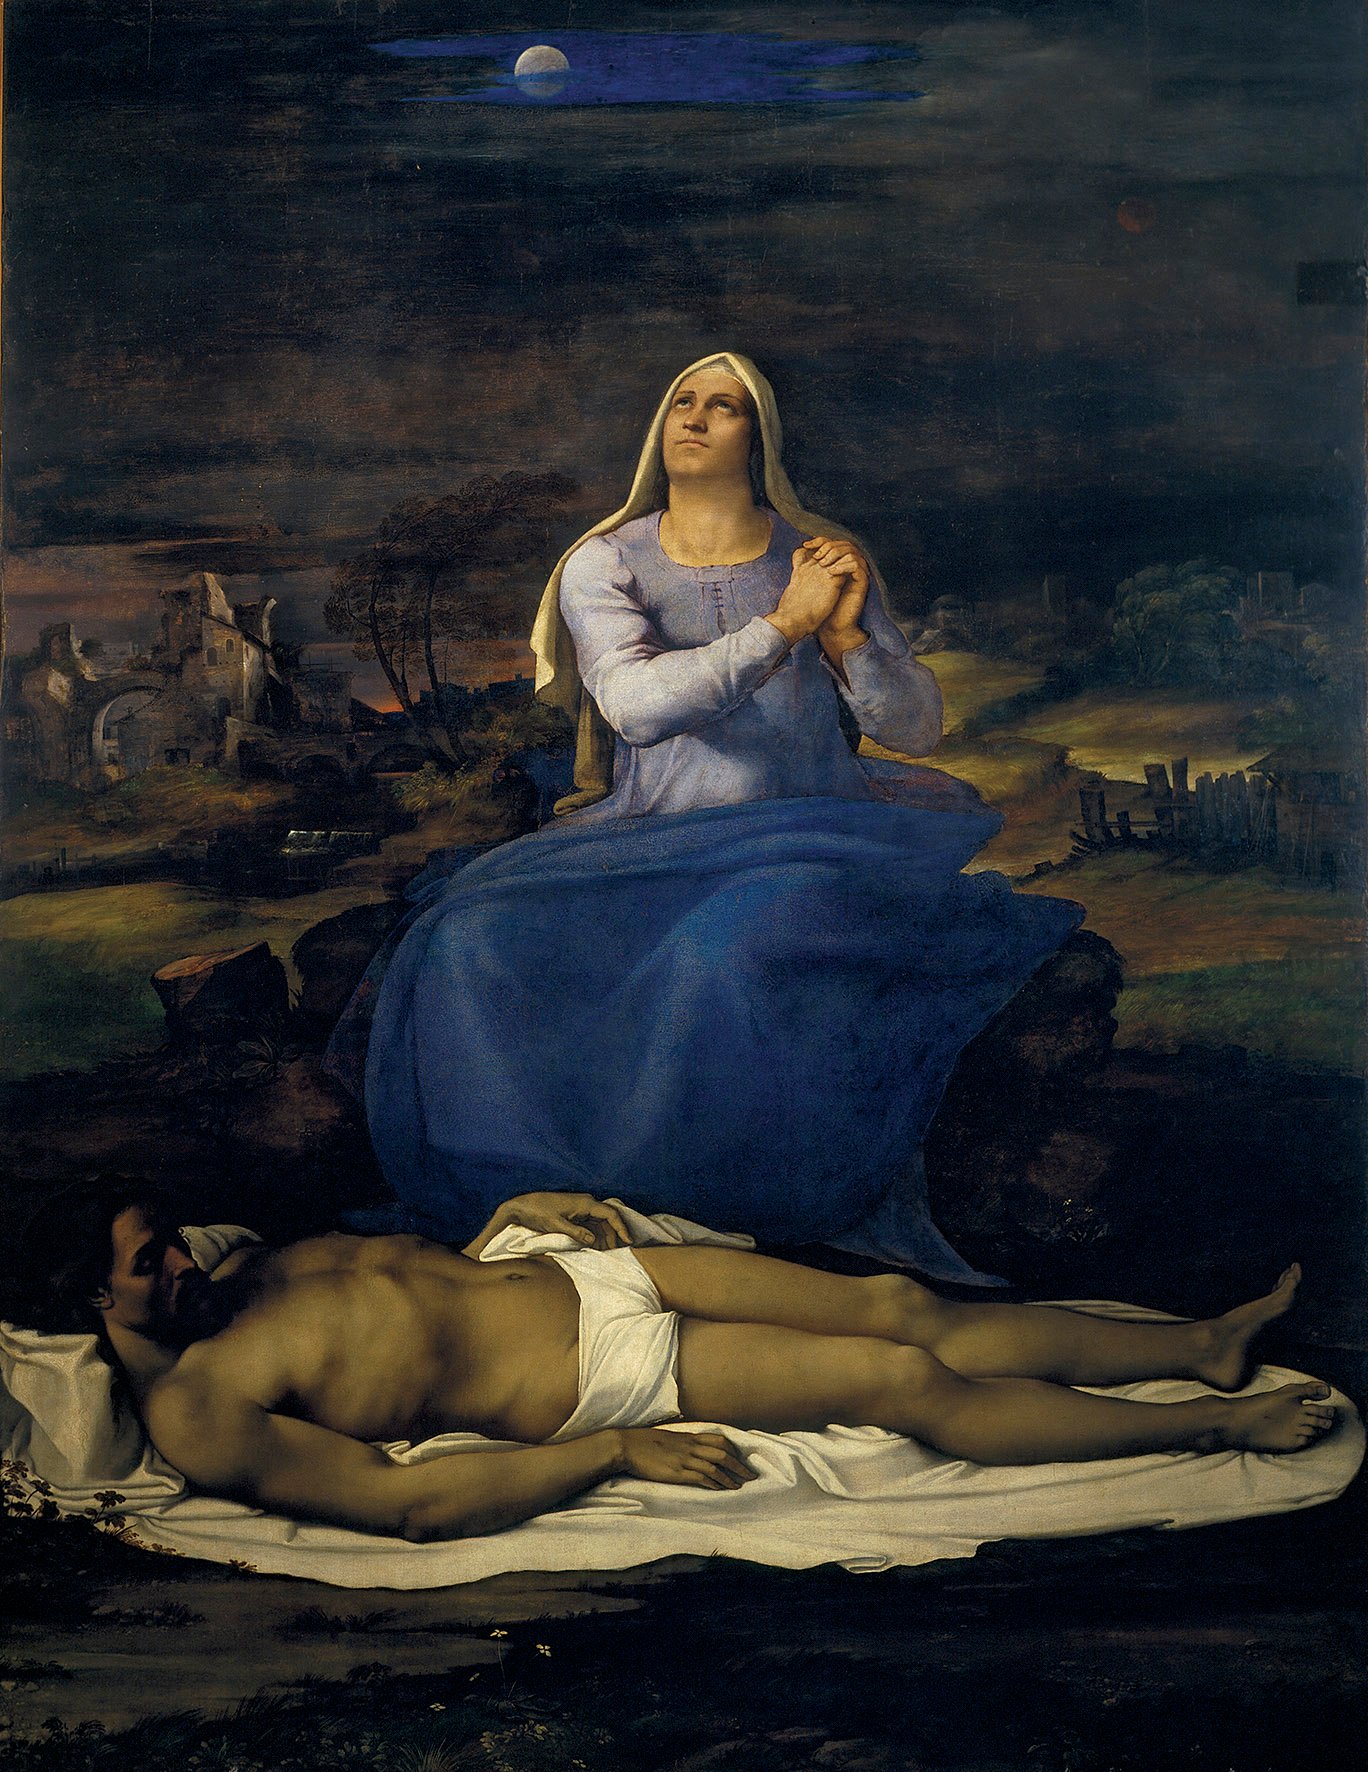 Sebastiano del Piombo, Il miracolo di Lazaro, ca. 1517-19. Olio su tela trasferito da tavola, 381 x 289,6 cm. © National Gallery. Courtesy National Gallery